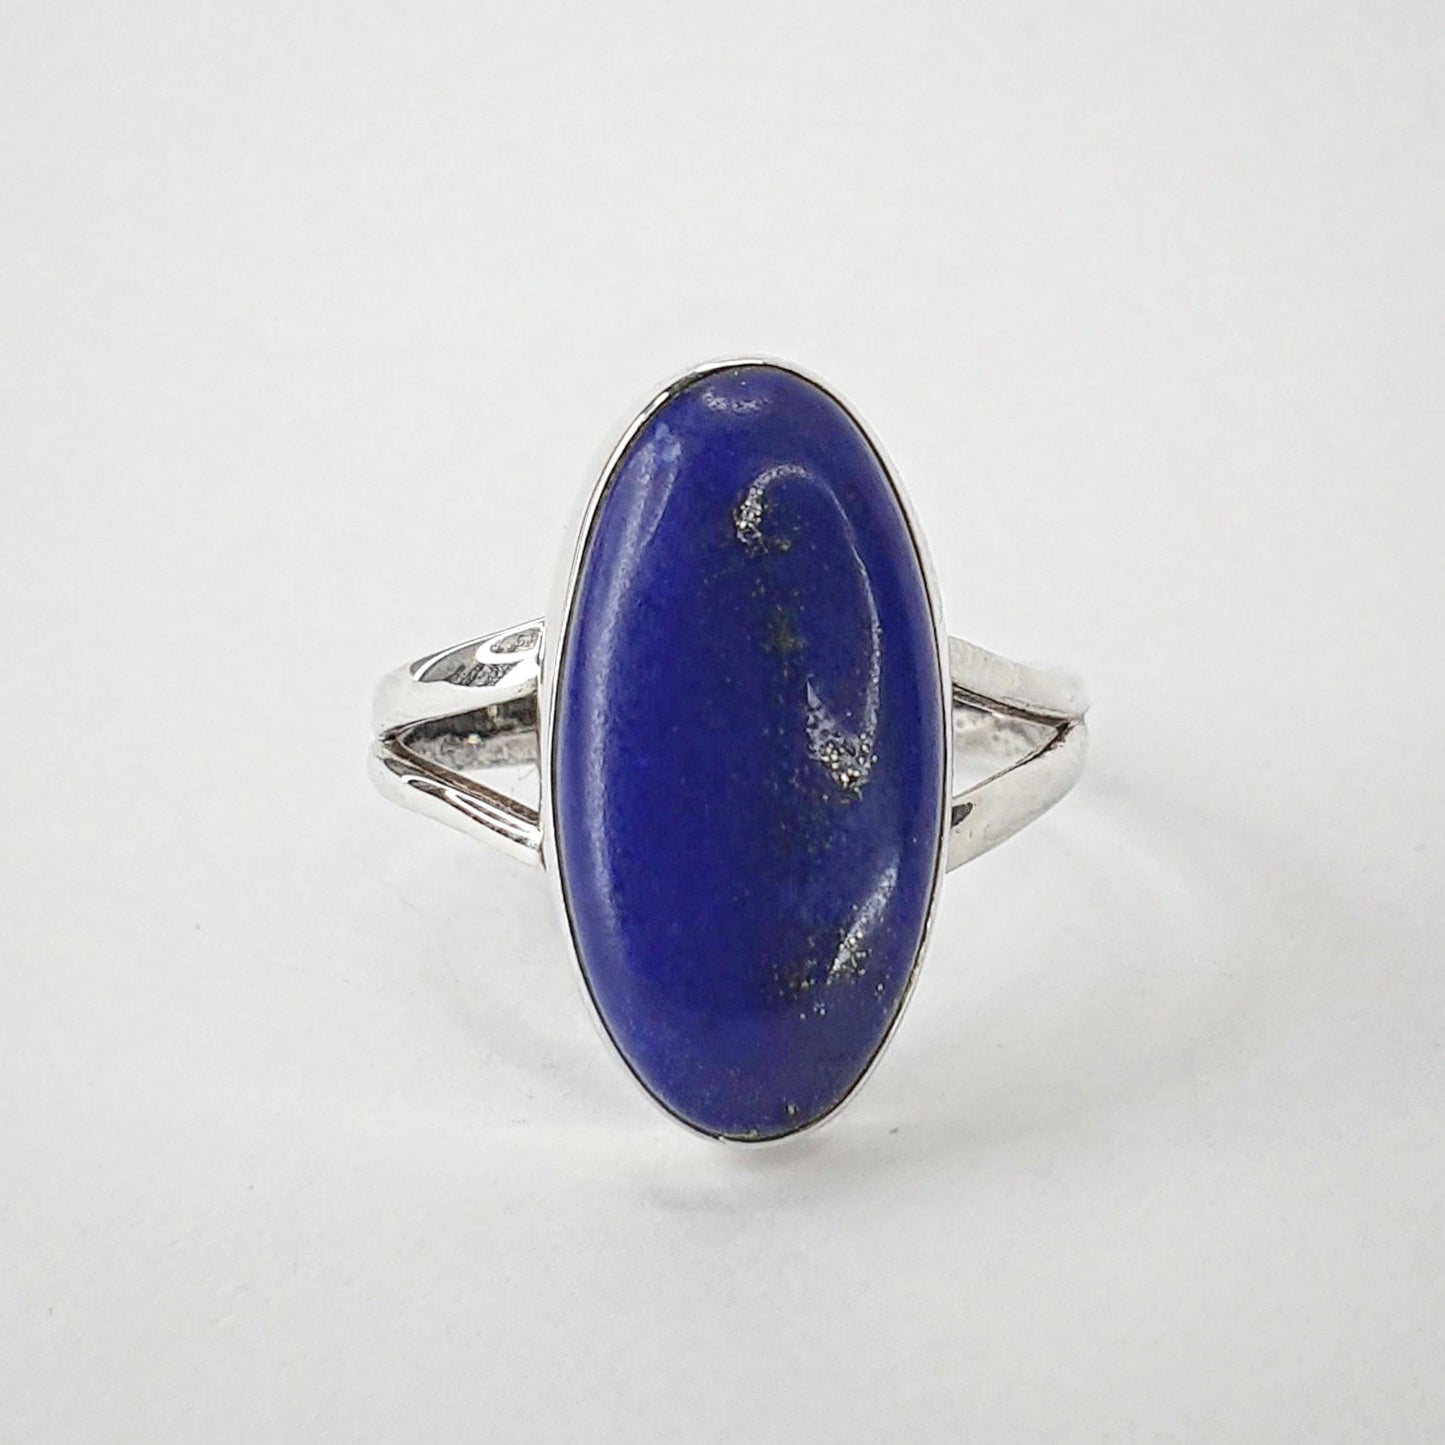 Lapis Lazuli Ring - Size 8.5 / R (JX168)